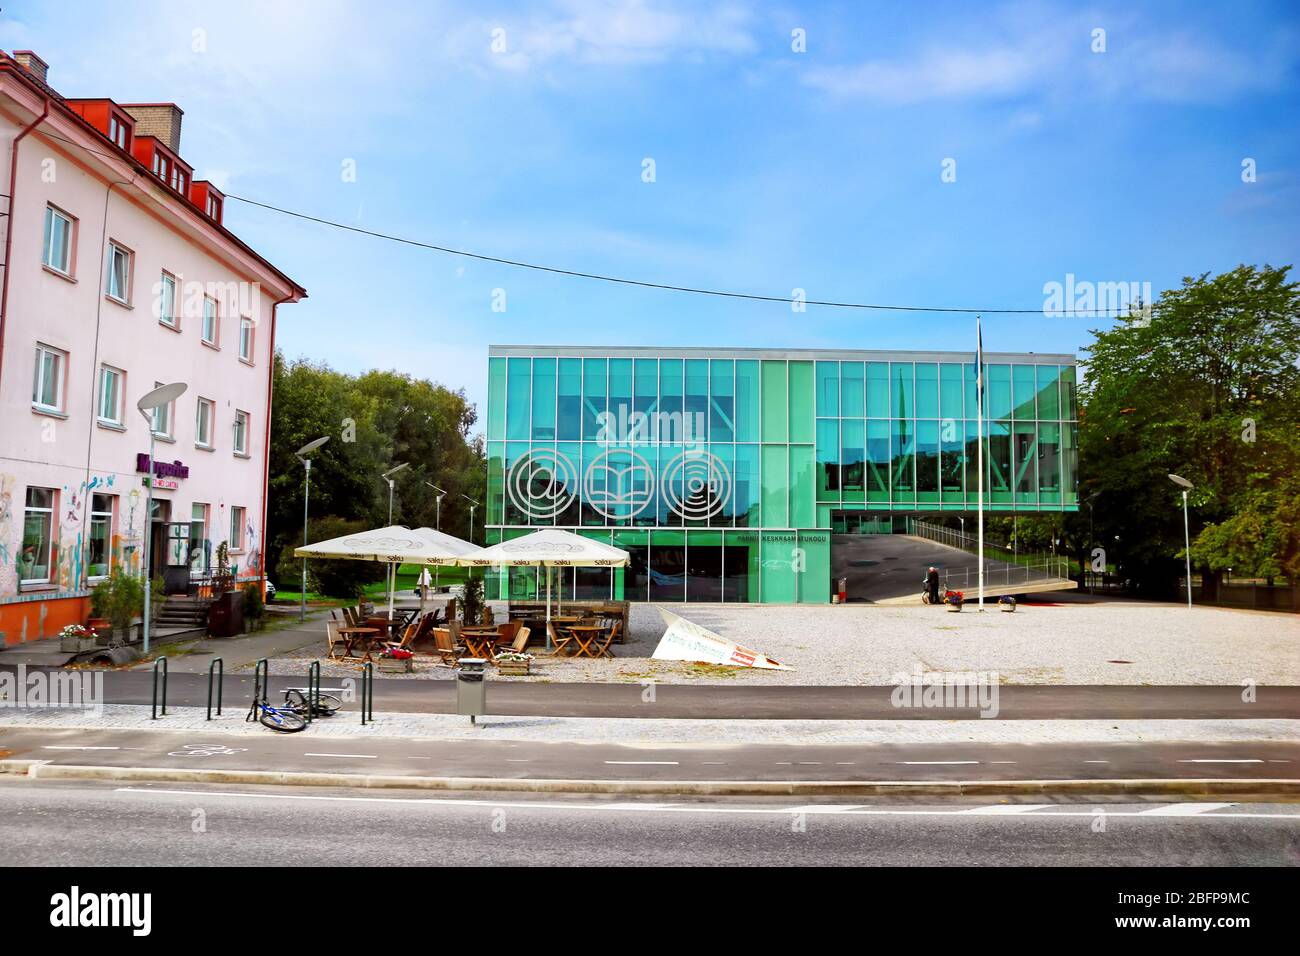 PARNU, ESTONIE - 31 AOÛT 2018 : le bâtiment de la Bibliothèque centrale de Parnu a été conçu par 3+1 architectes Markus Kaasik, Andres Ojari et Ilmar Valdur Banque D'Images